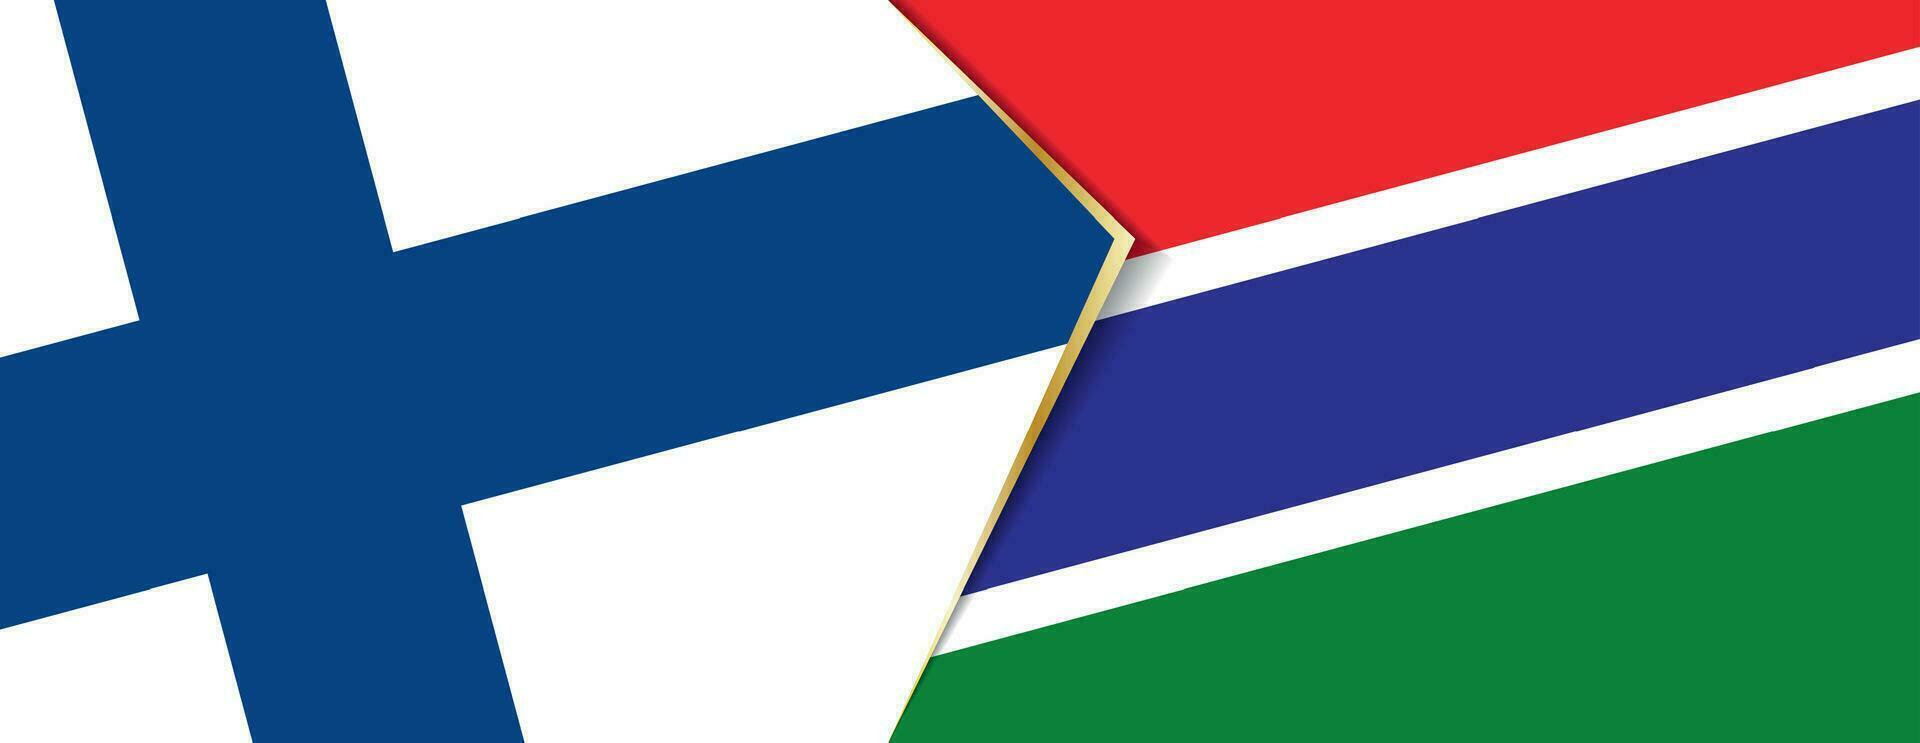 Finnland und Gambia Flaggen, zwei Vektor Flaggen.